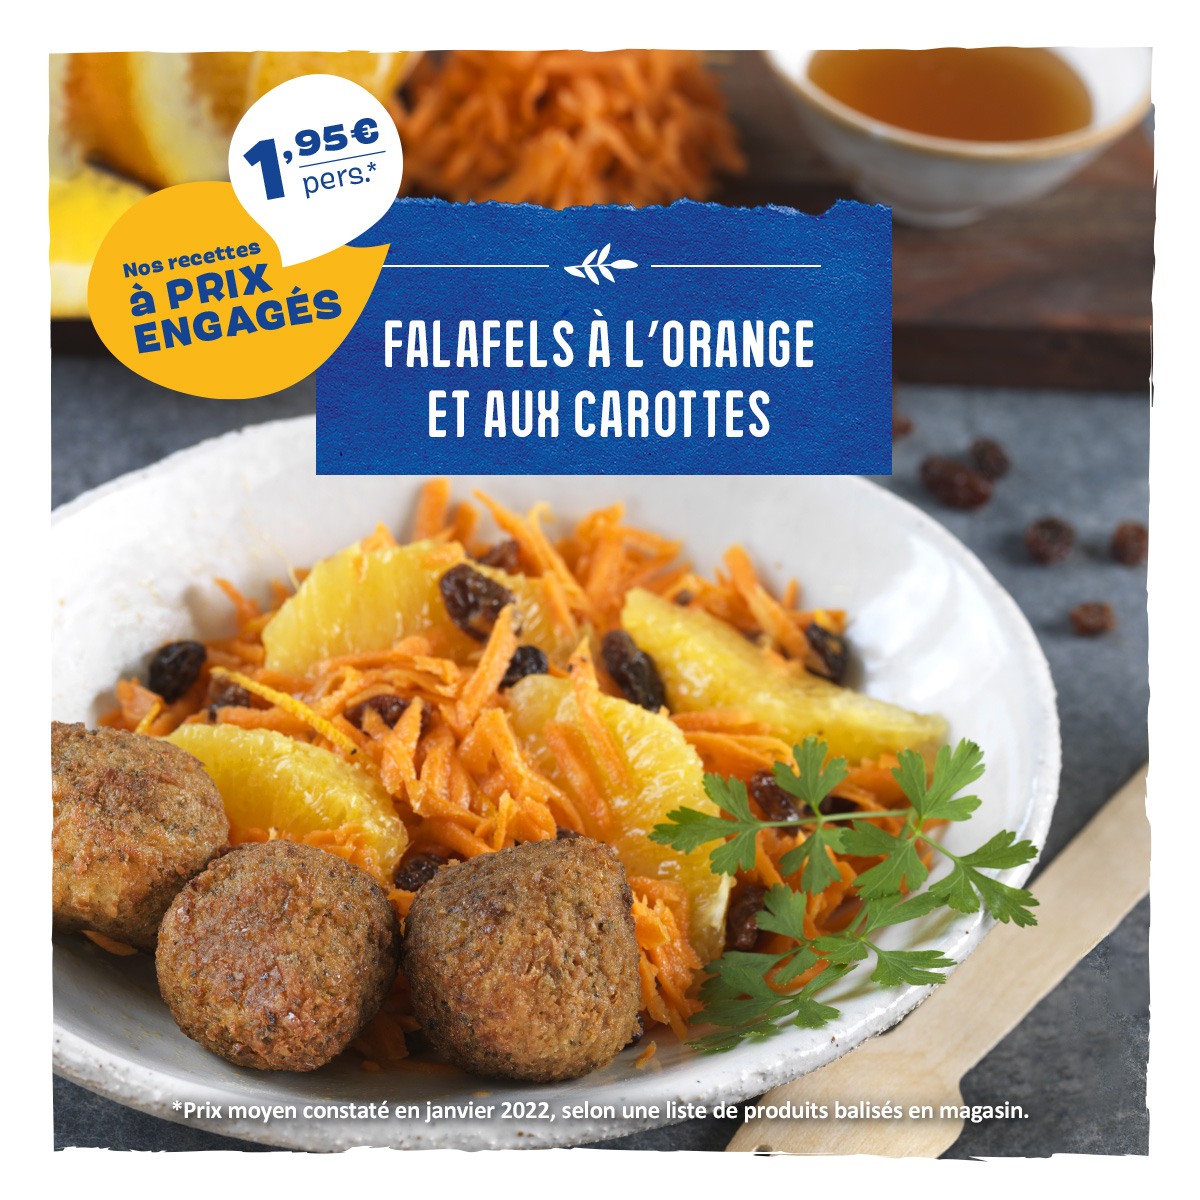 Falafels à lorange et aux carottes (1,95/personne)  